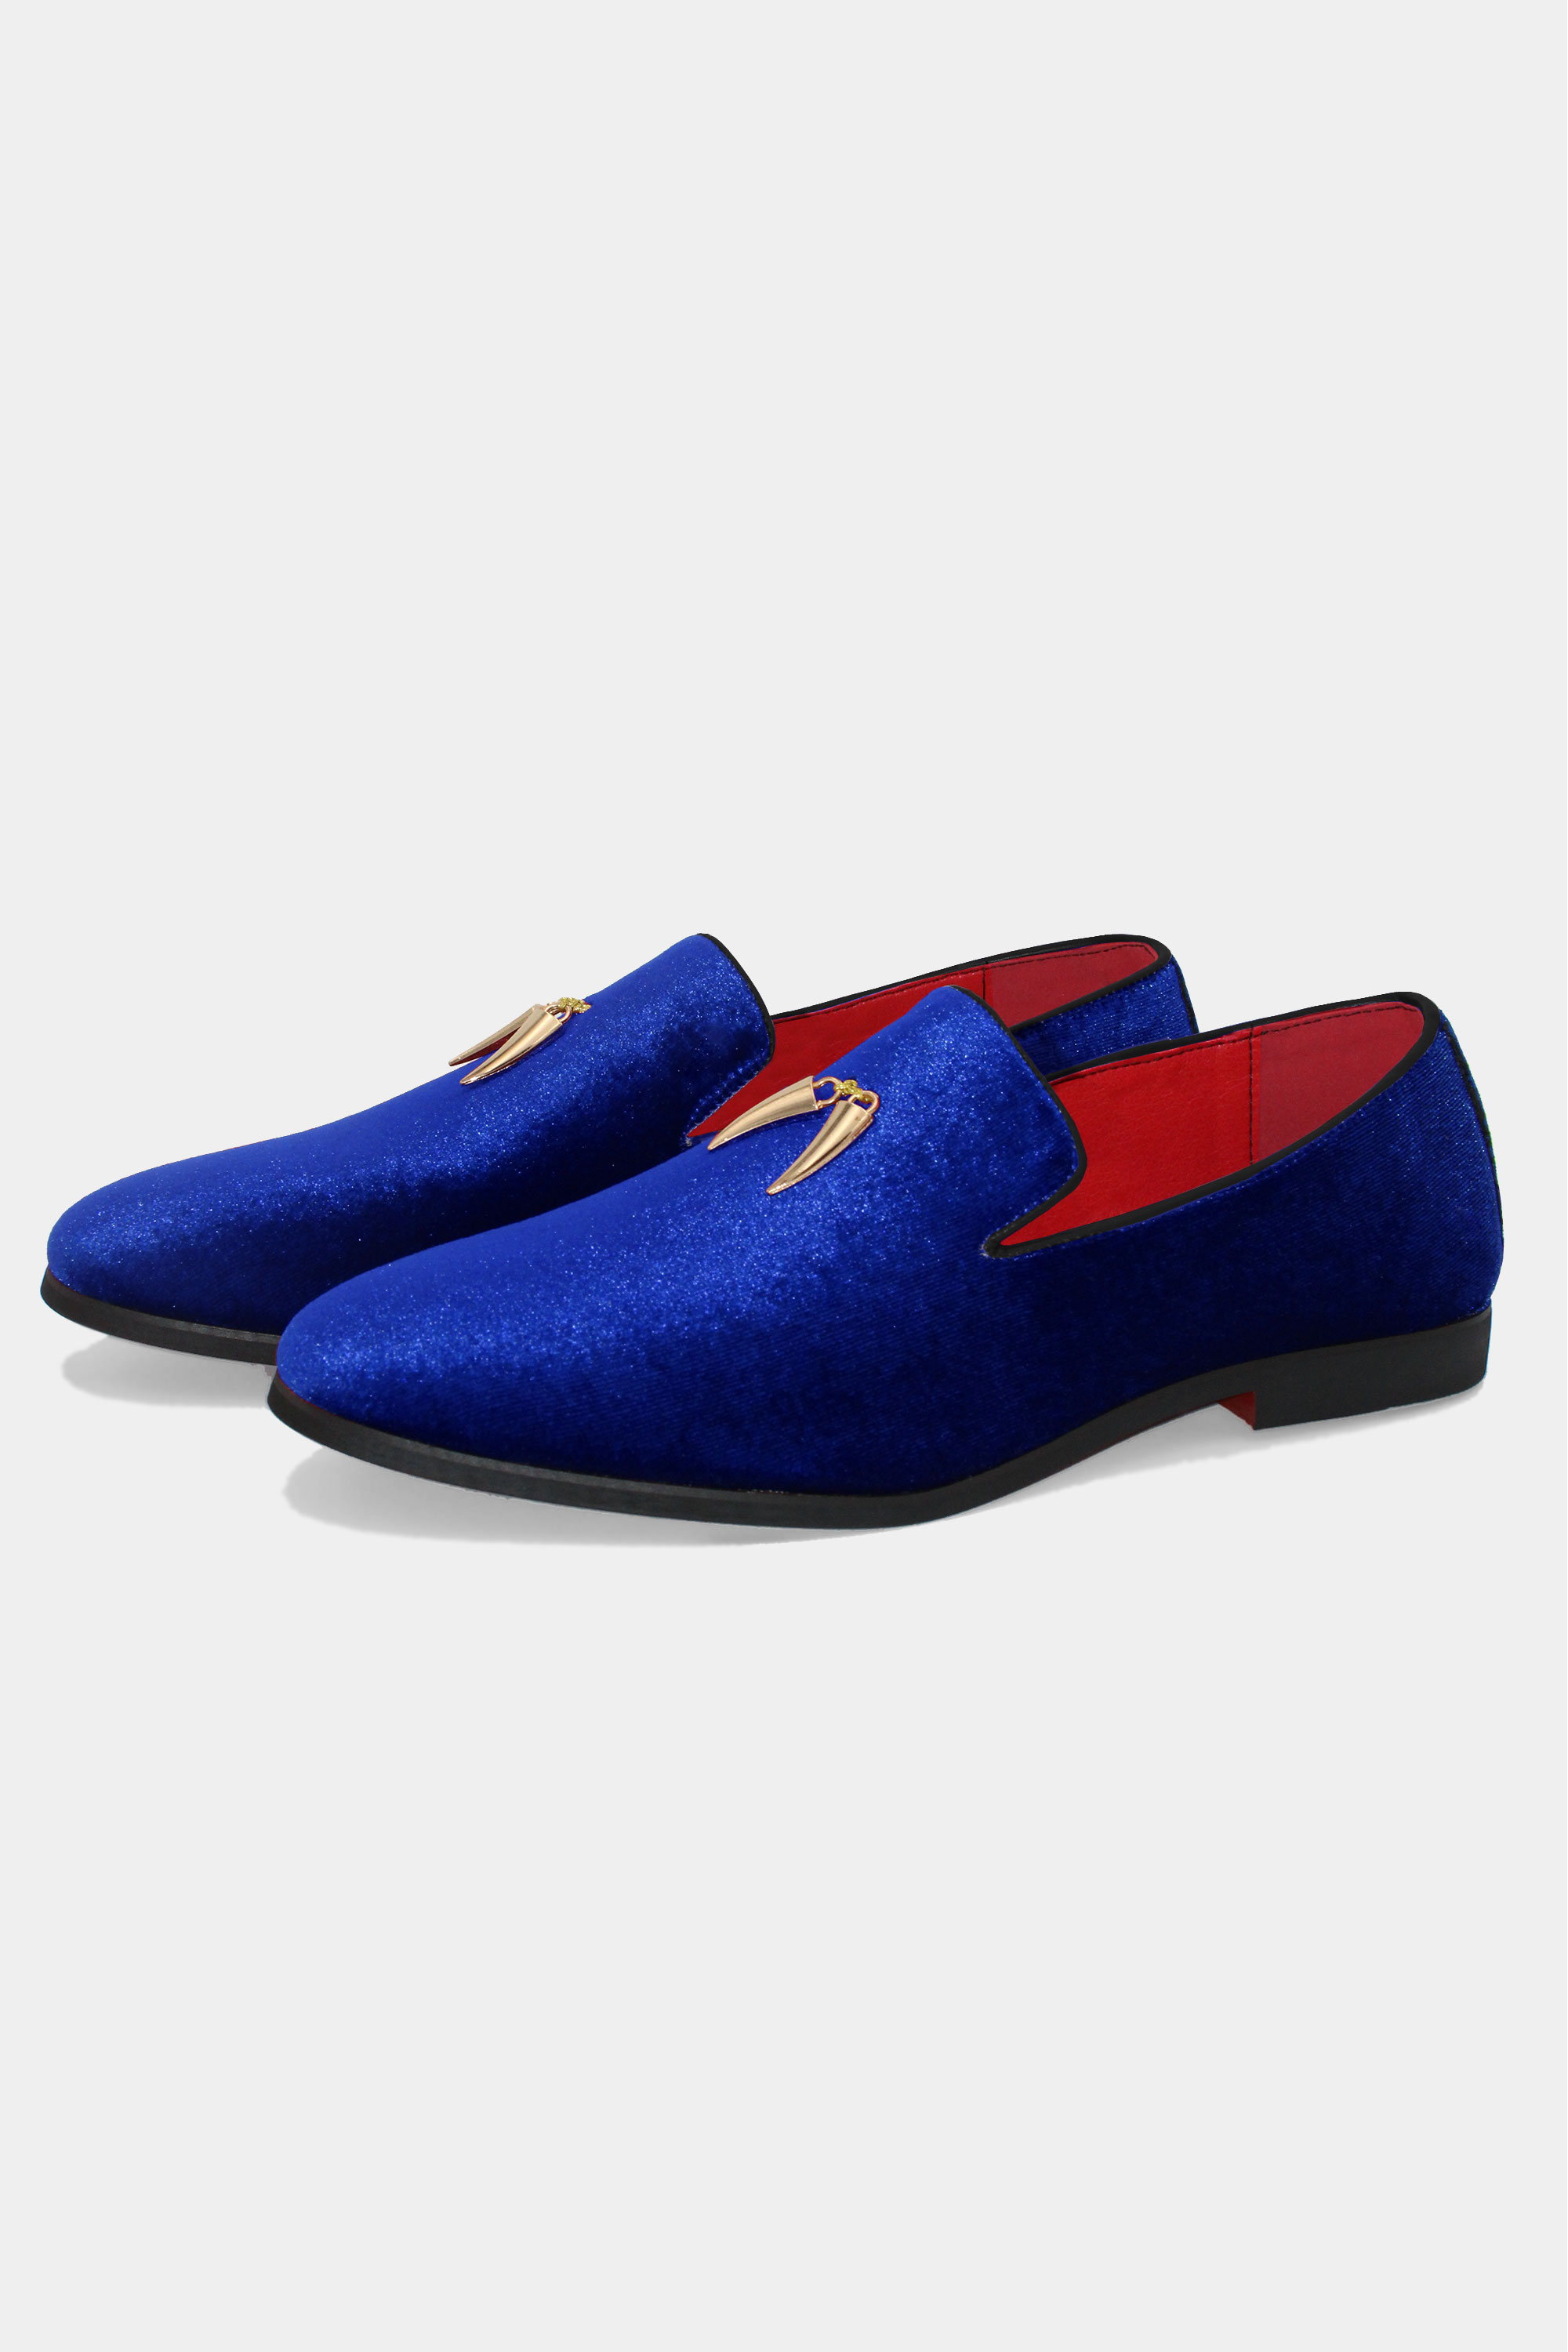 Men's Blue Velvet Loafers Shoes